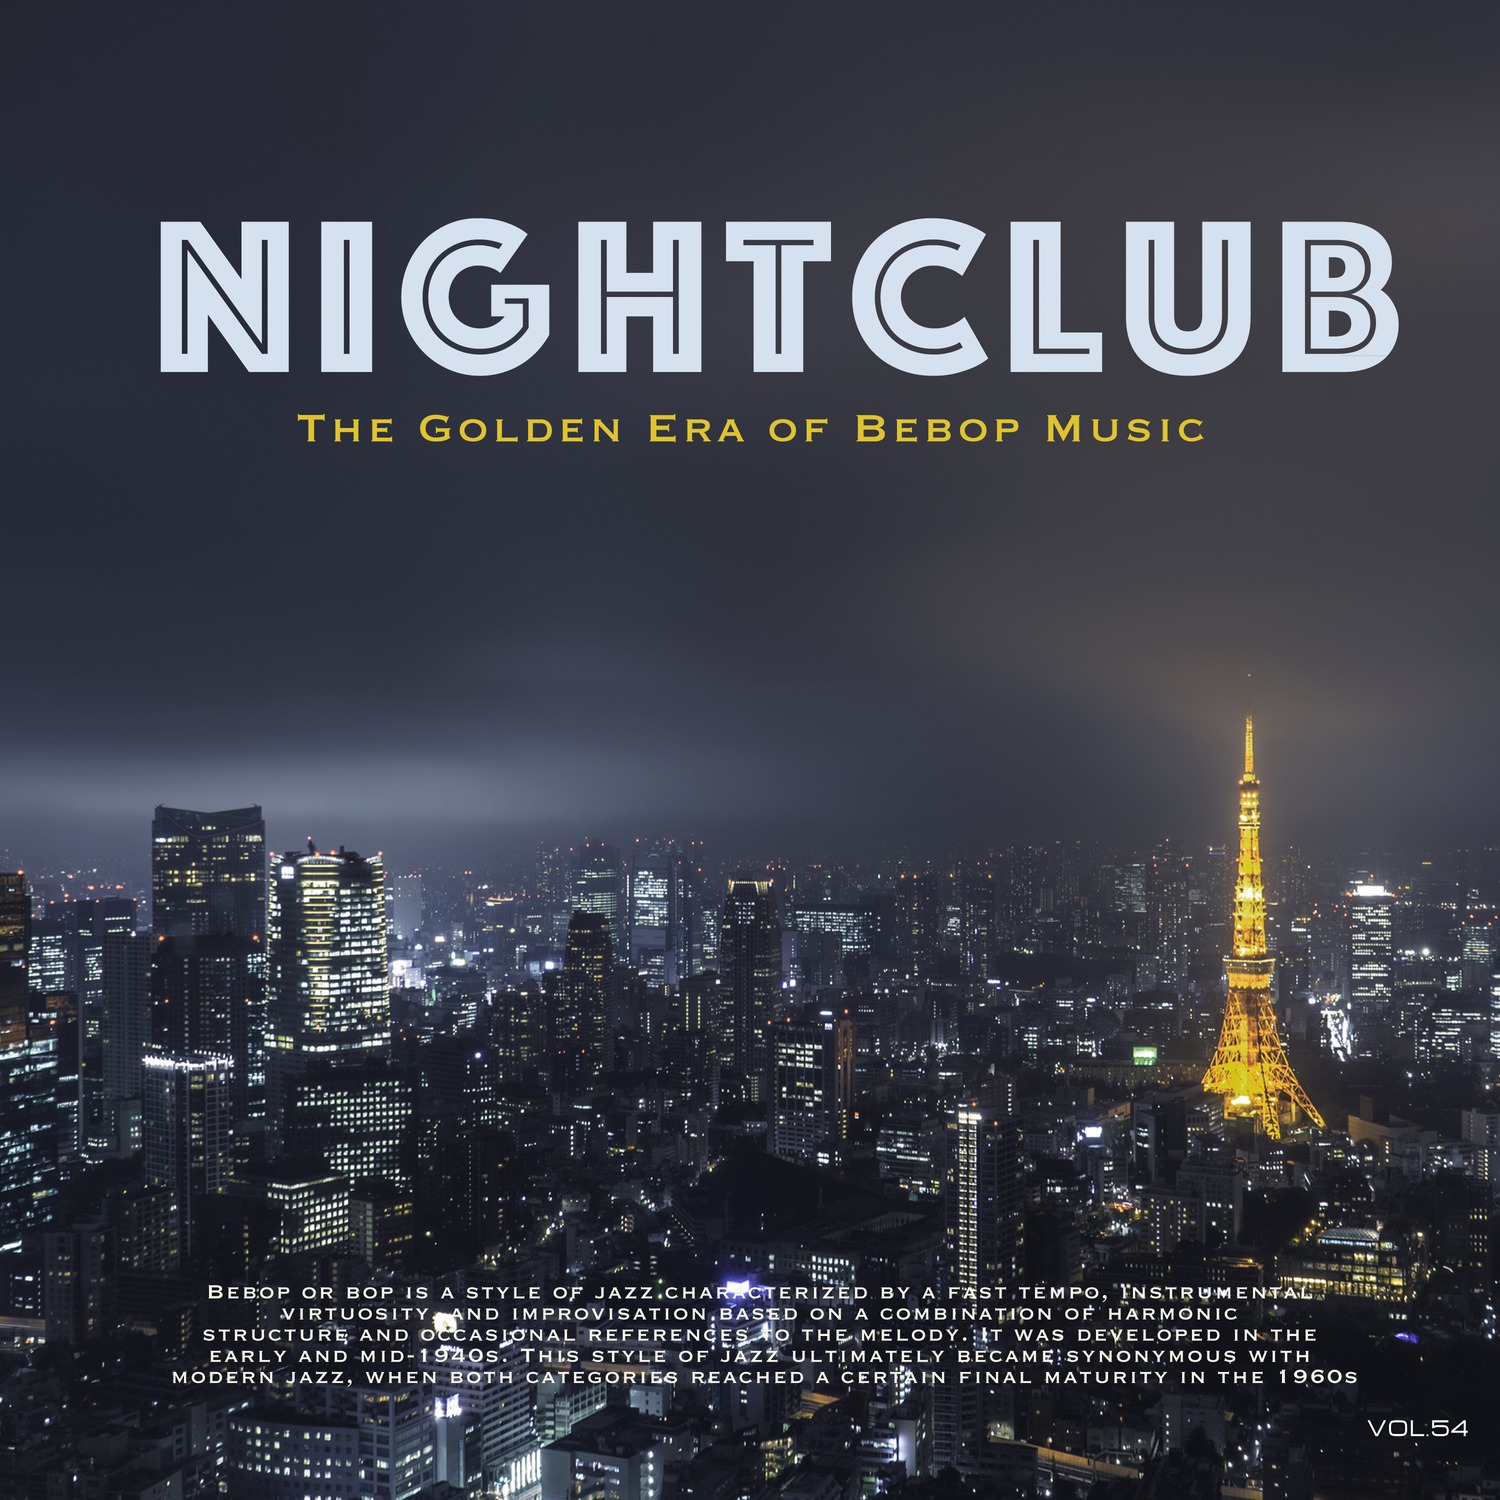 Nightclub, Vol. 54 (The Golden Era of Bebop Music)